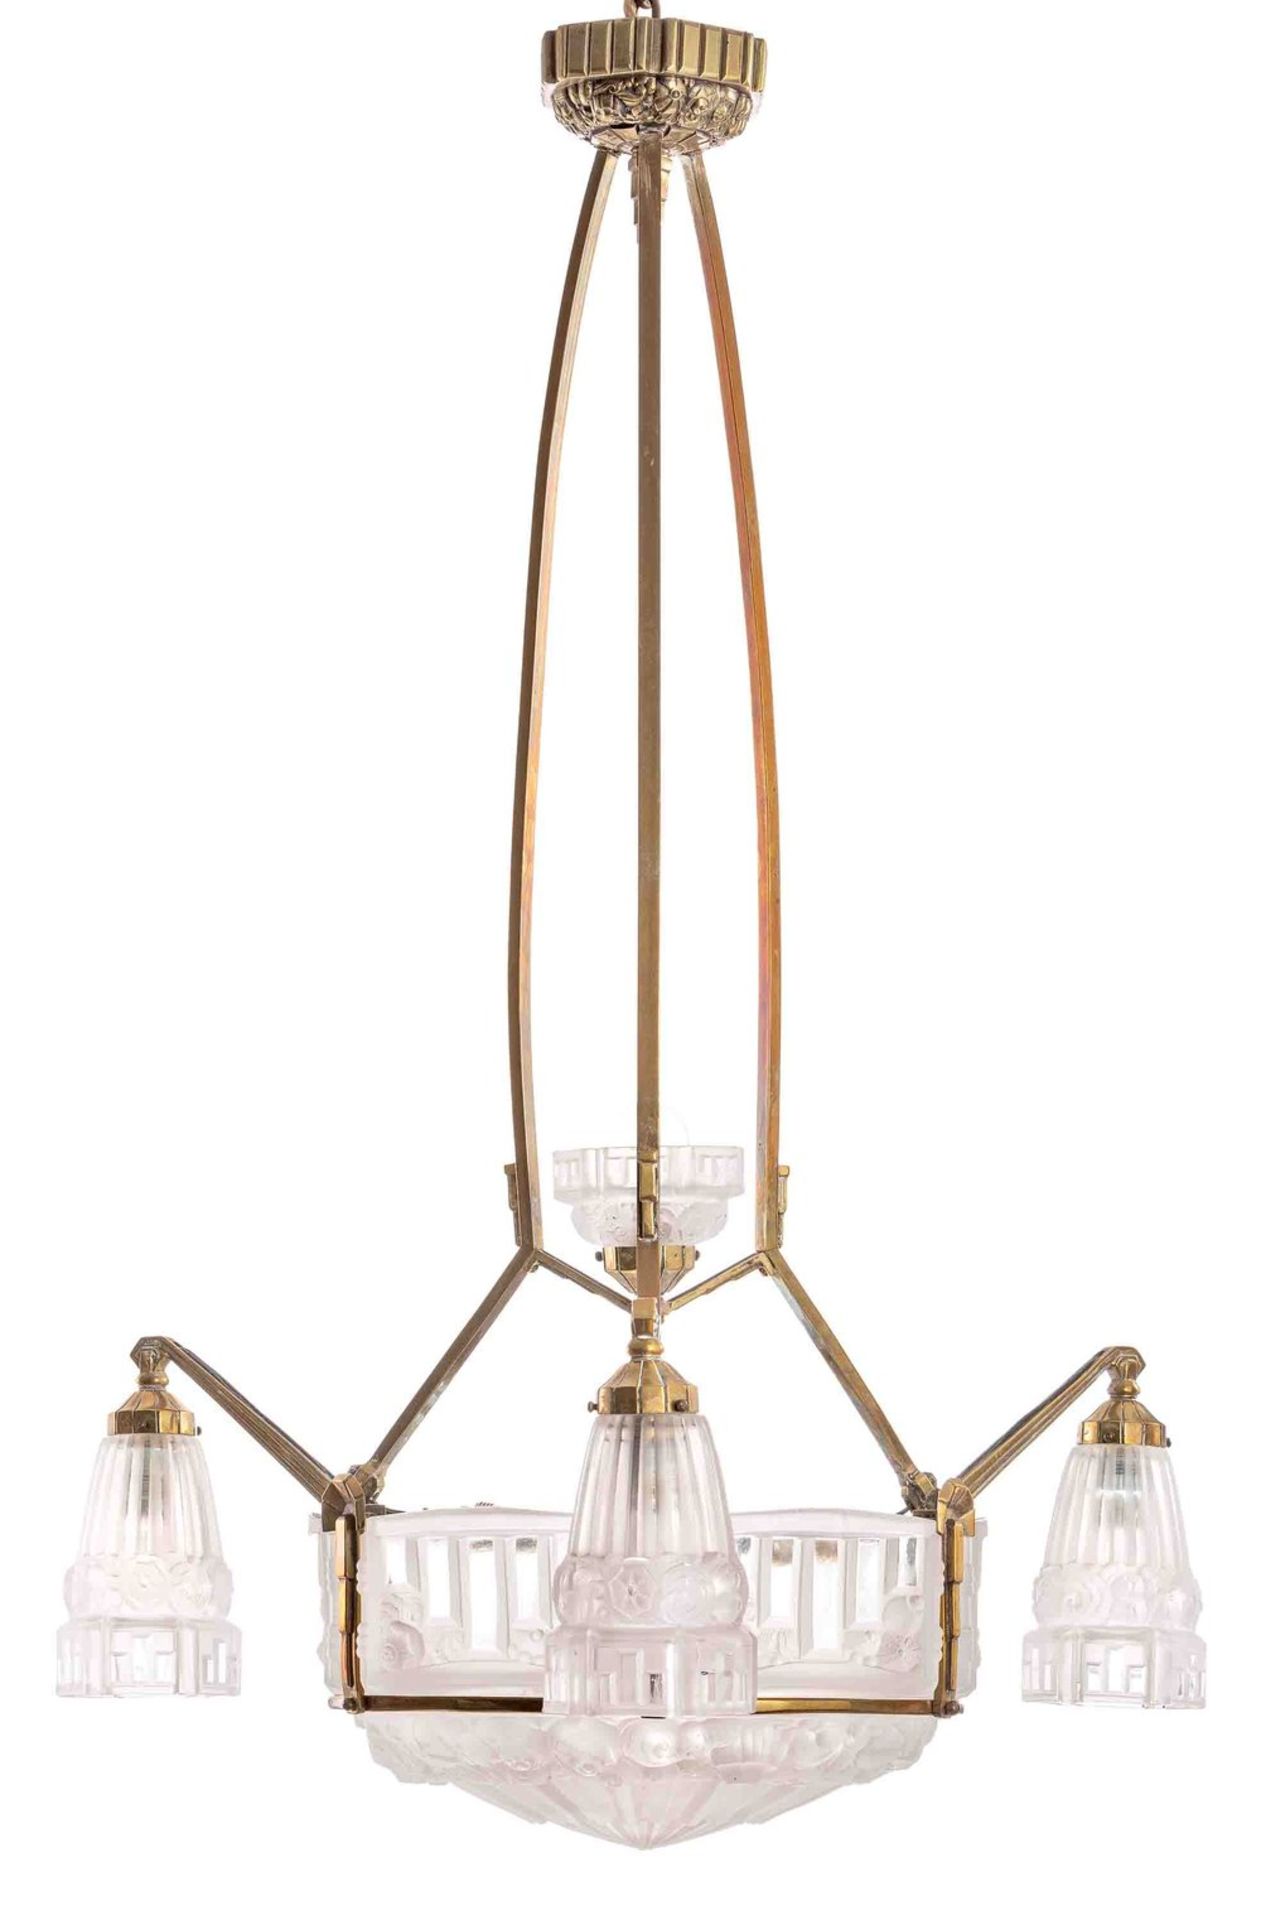 Deckenlampe Art DecoFrankreich, um 1925Messing, Pressglas, überwiegend mattiert. Sie